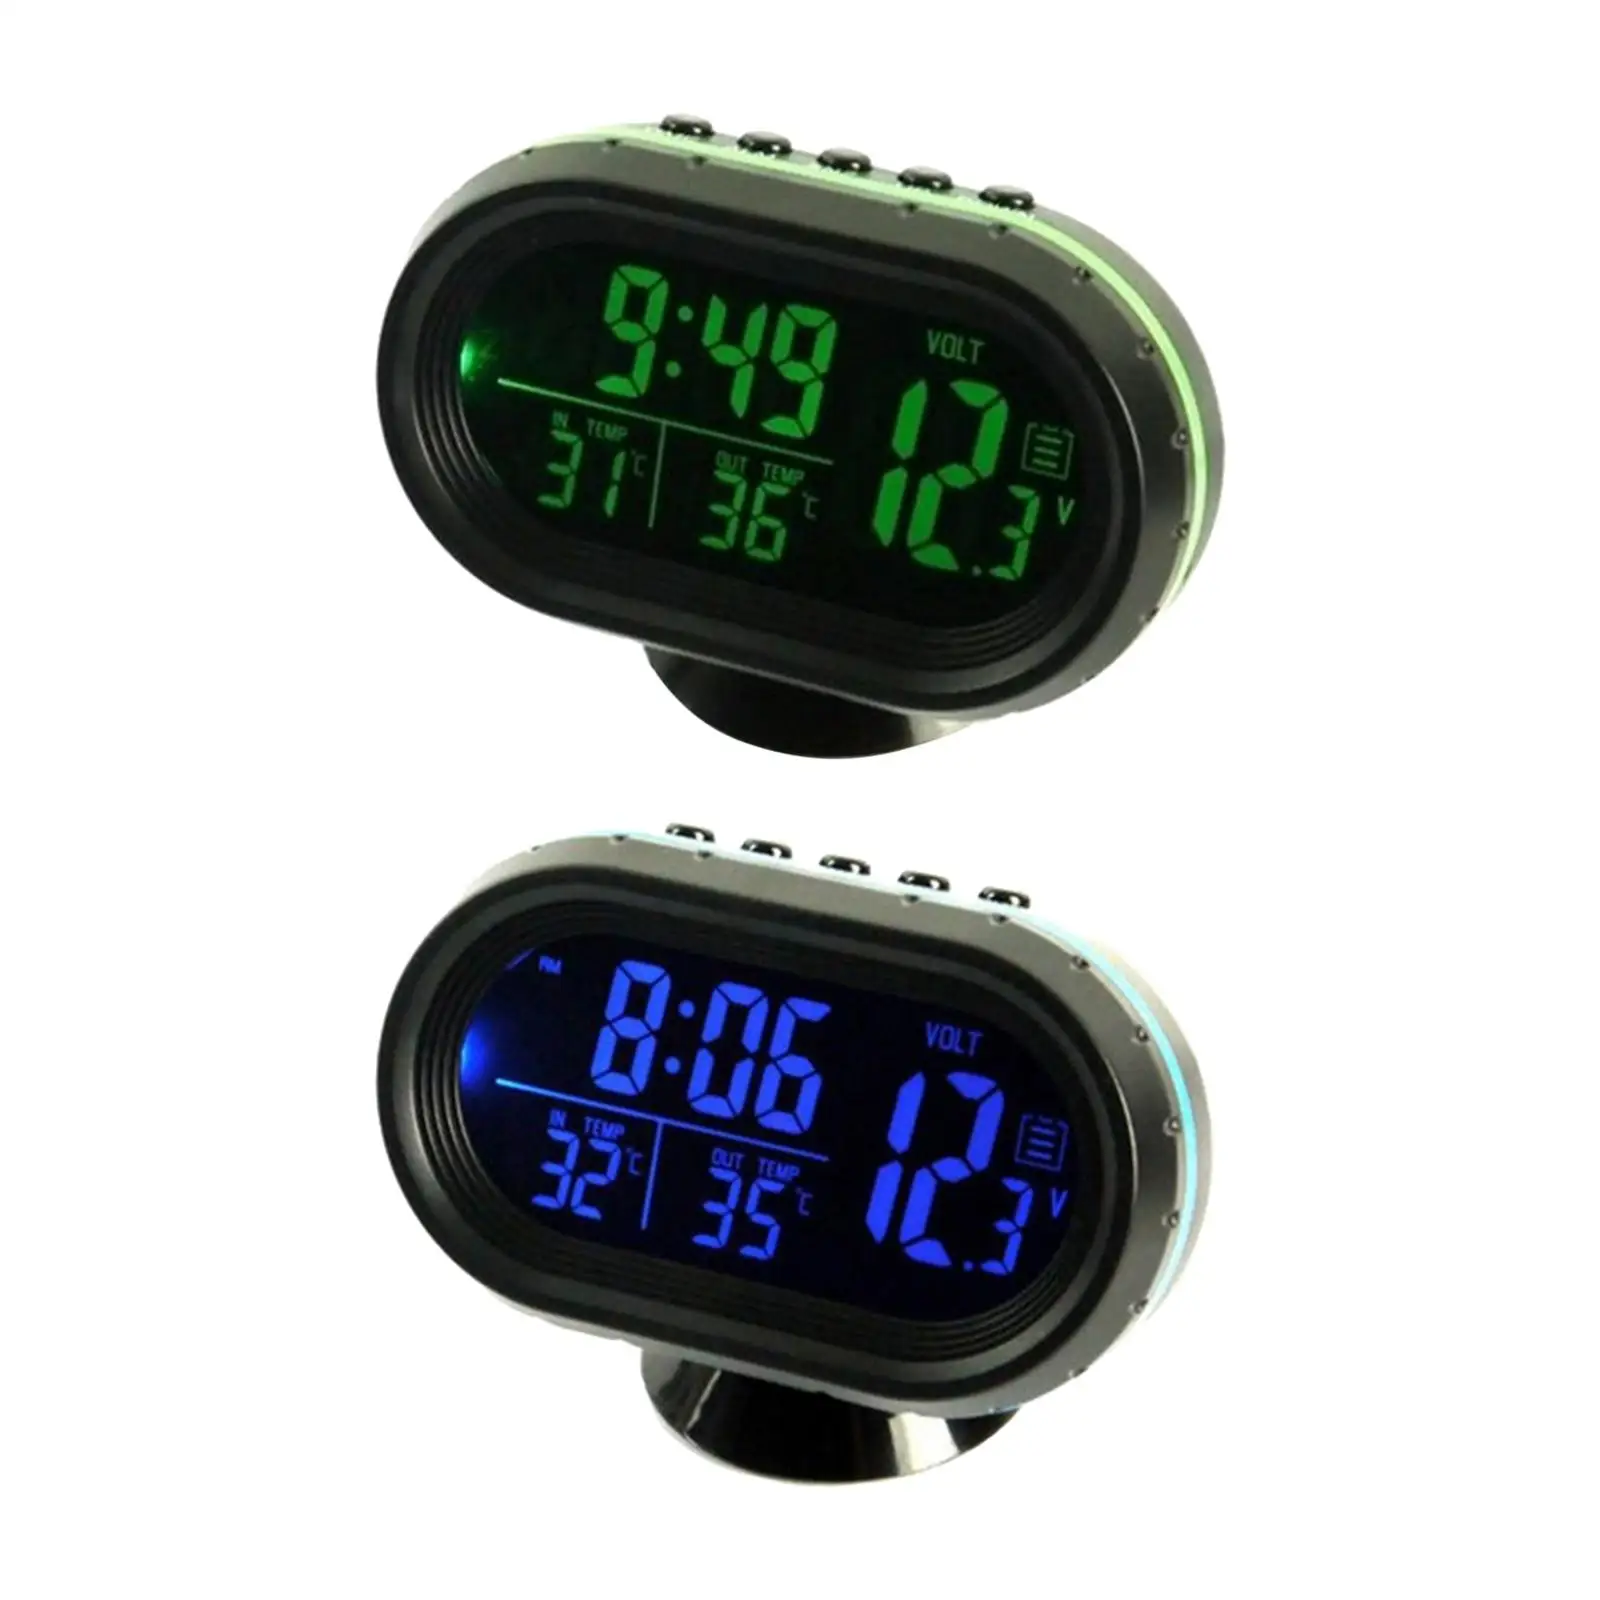 Thermometer Clock Voltmeter Battery Meter Dual Temperature Gauge Alarm Monitor